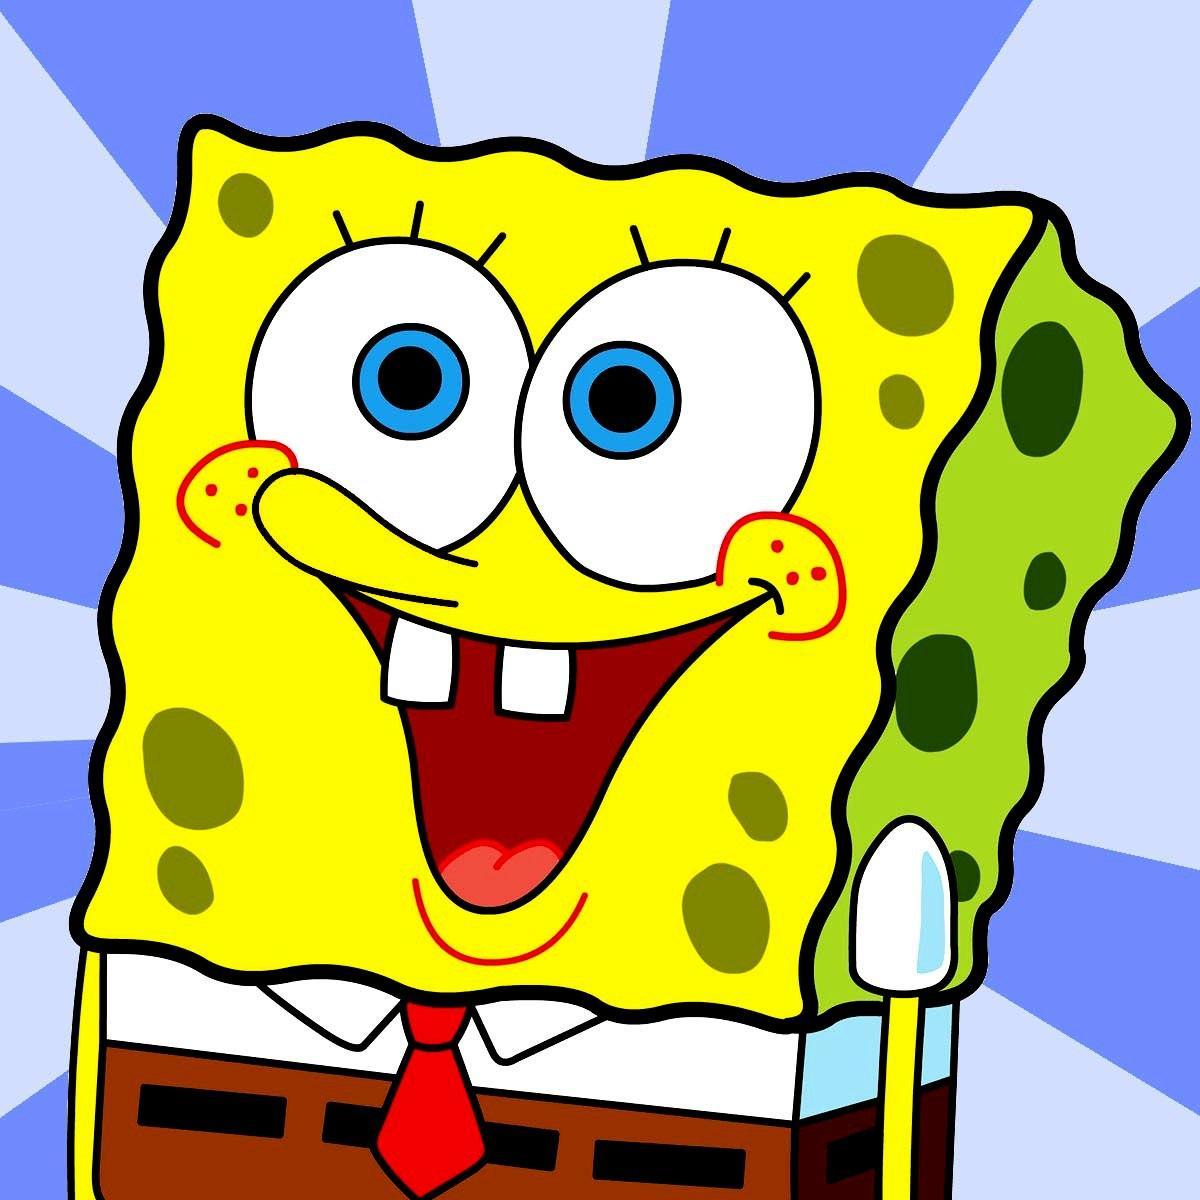  Spongebob  Tweets SpongebobTweet Twitter